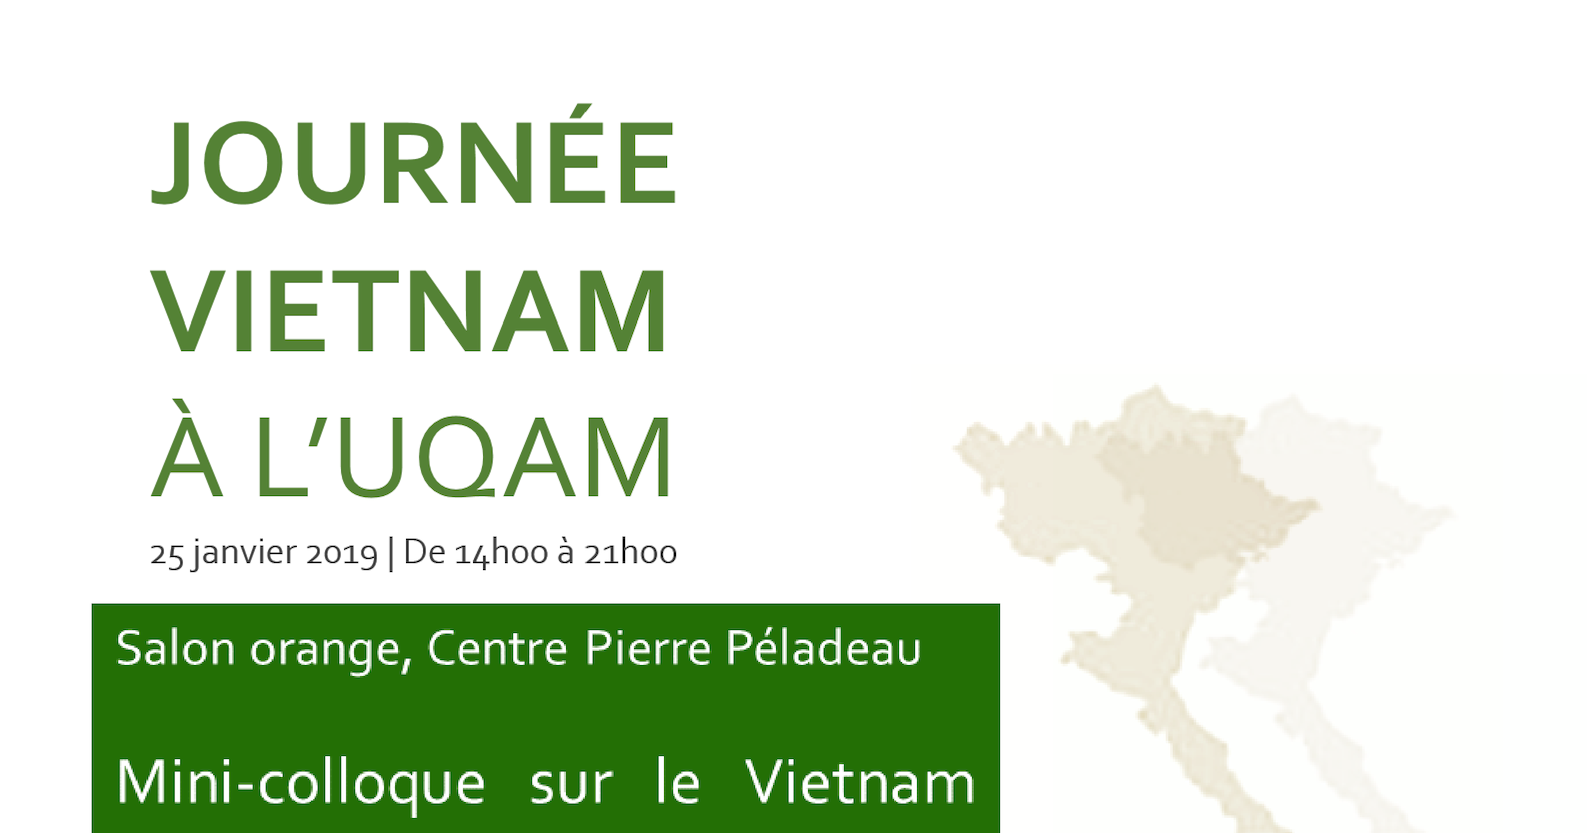 Journée du Vietnam à l'UQAM